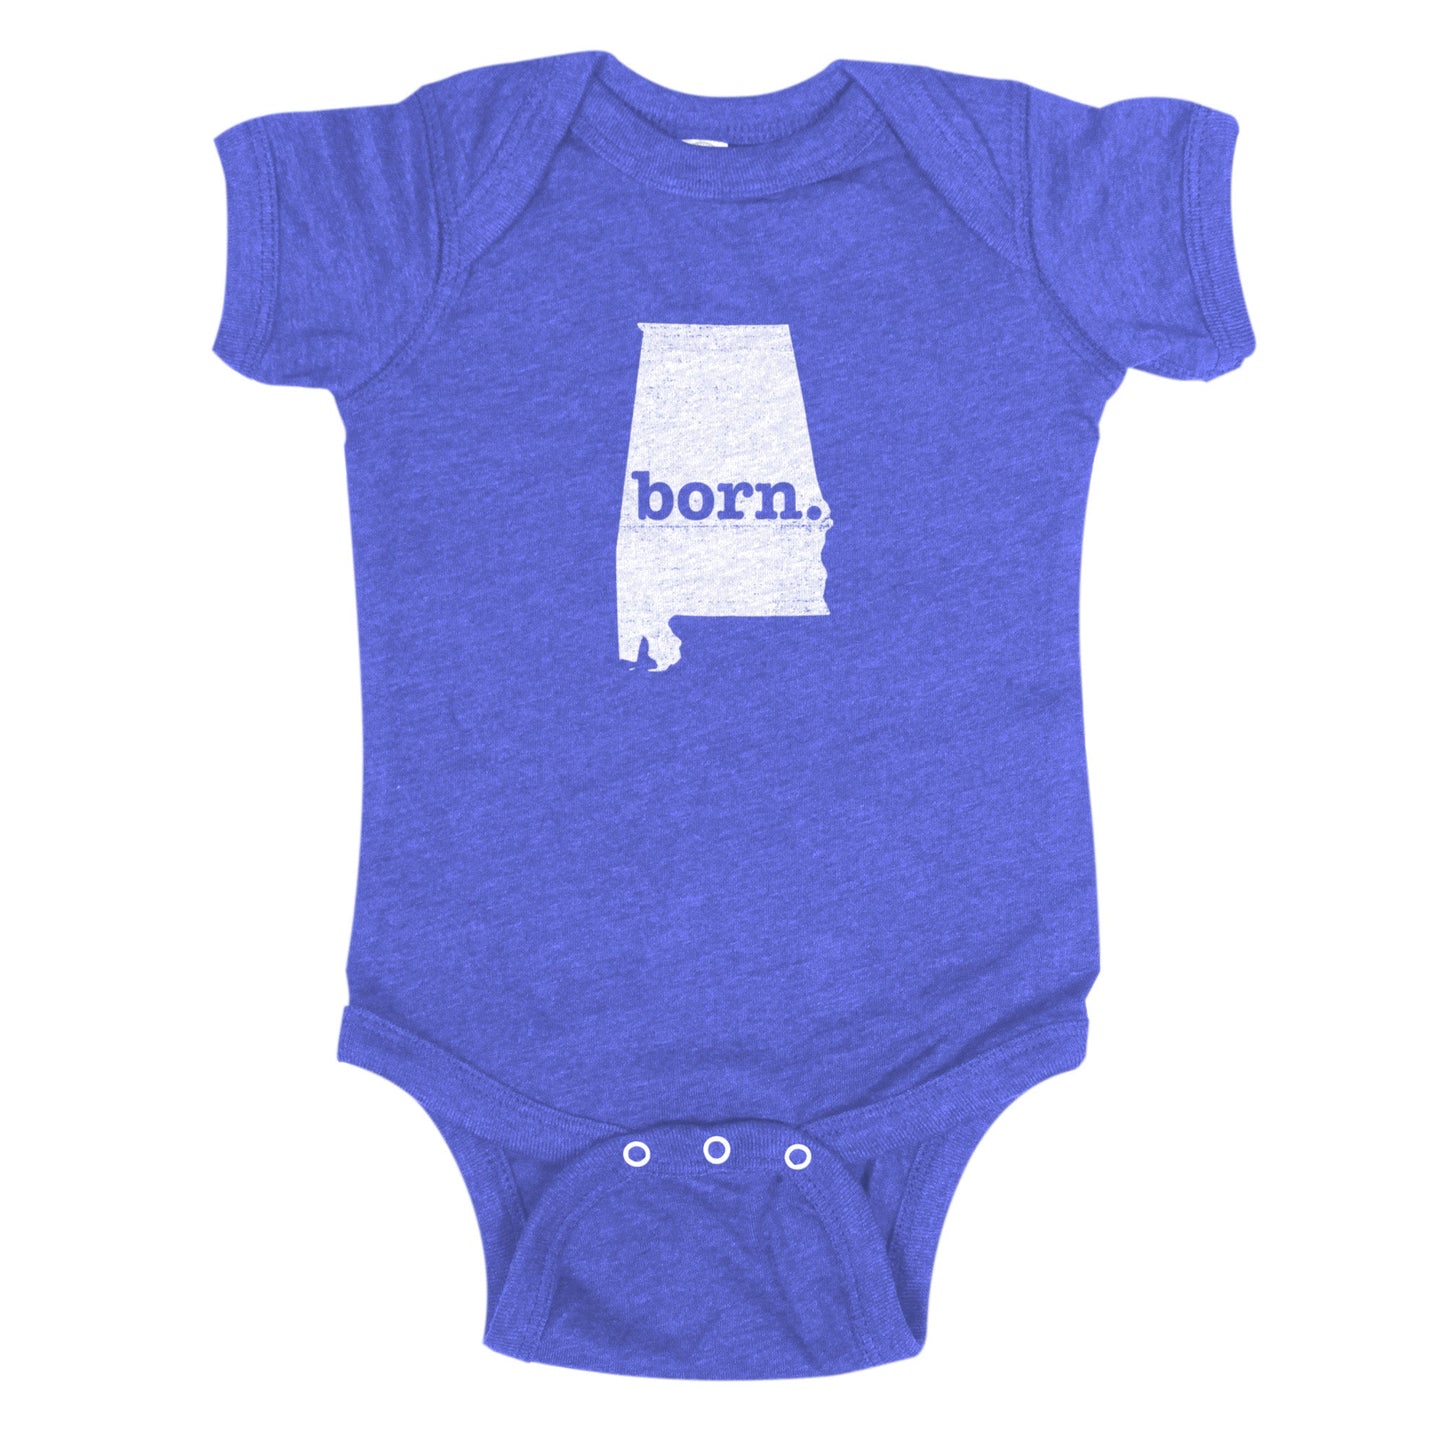 born. Baby Bodysuit - Alabama